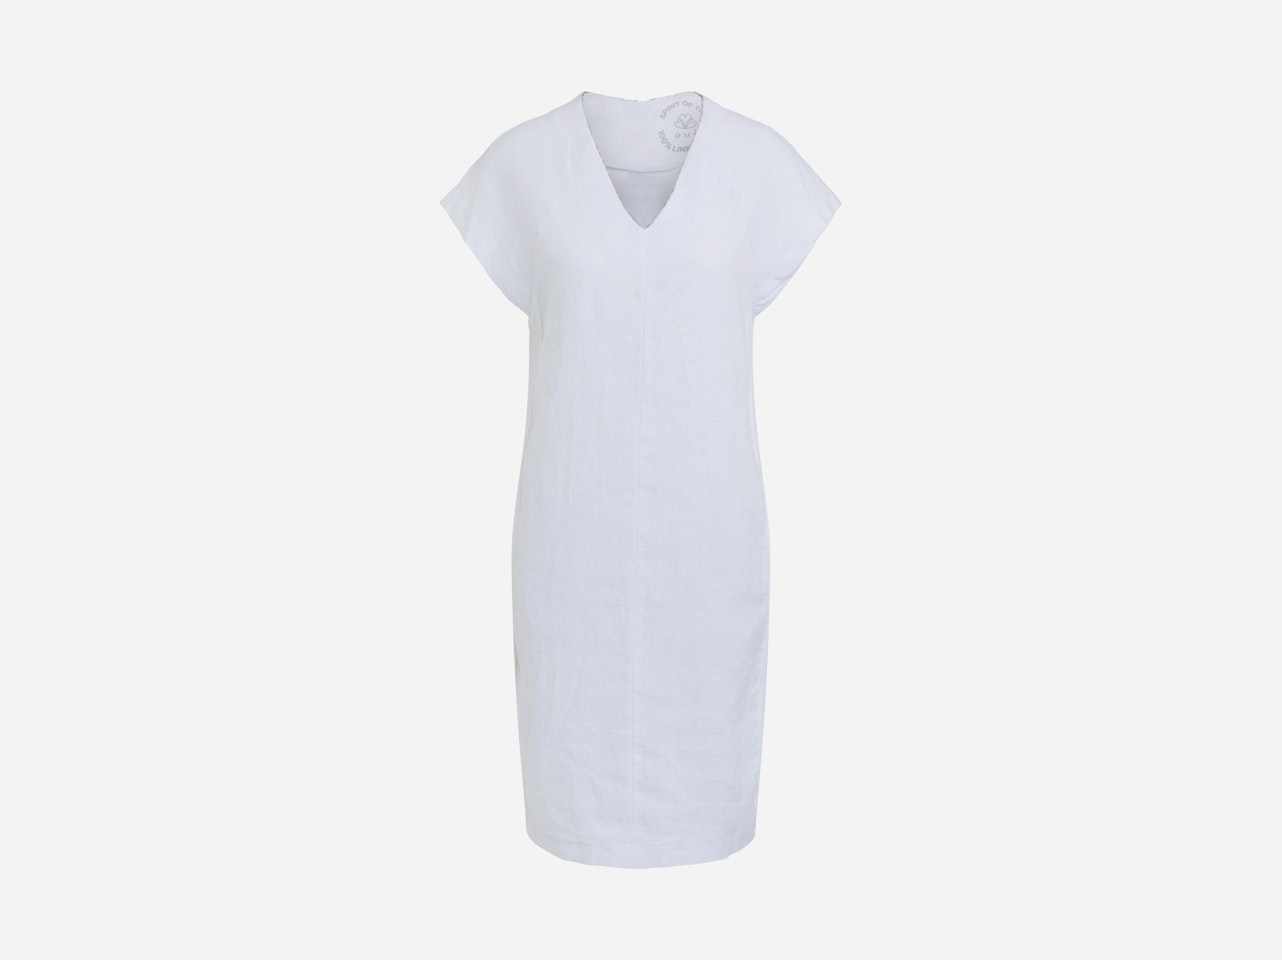 Linen dress with V-neck